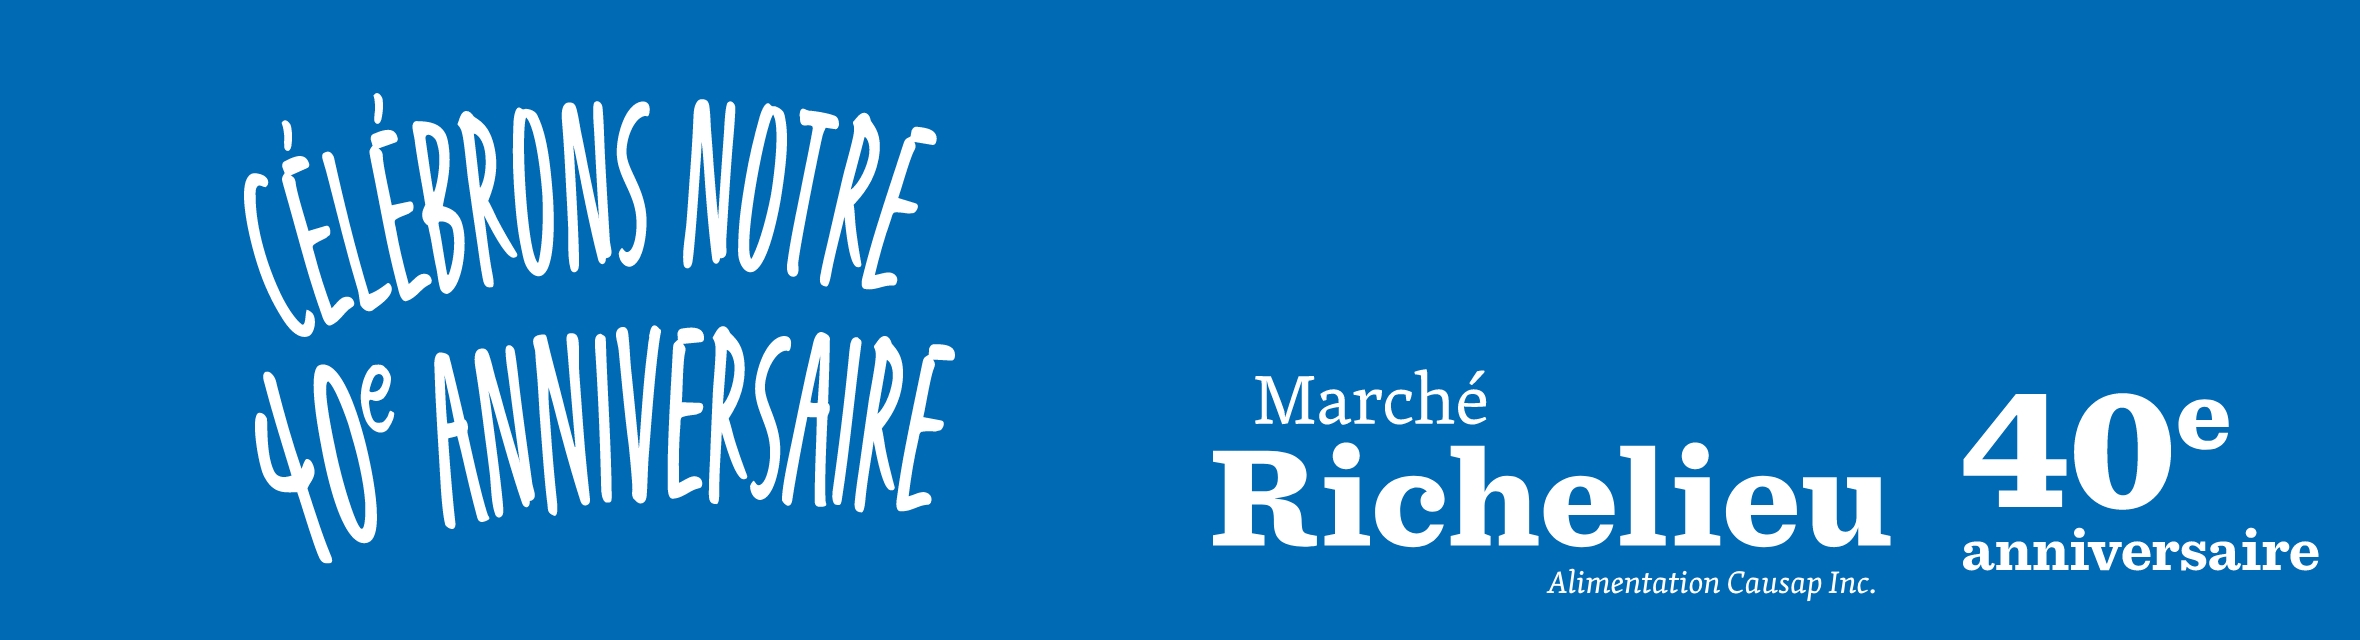 Marché Richelieu Alimentation Causap Inc. Célébrons notre 40e anniversaire